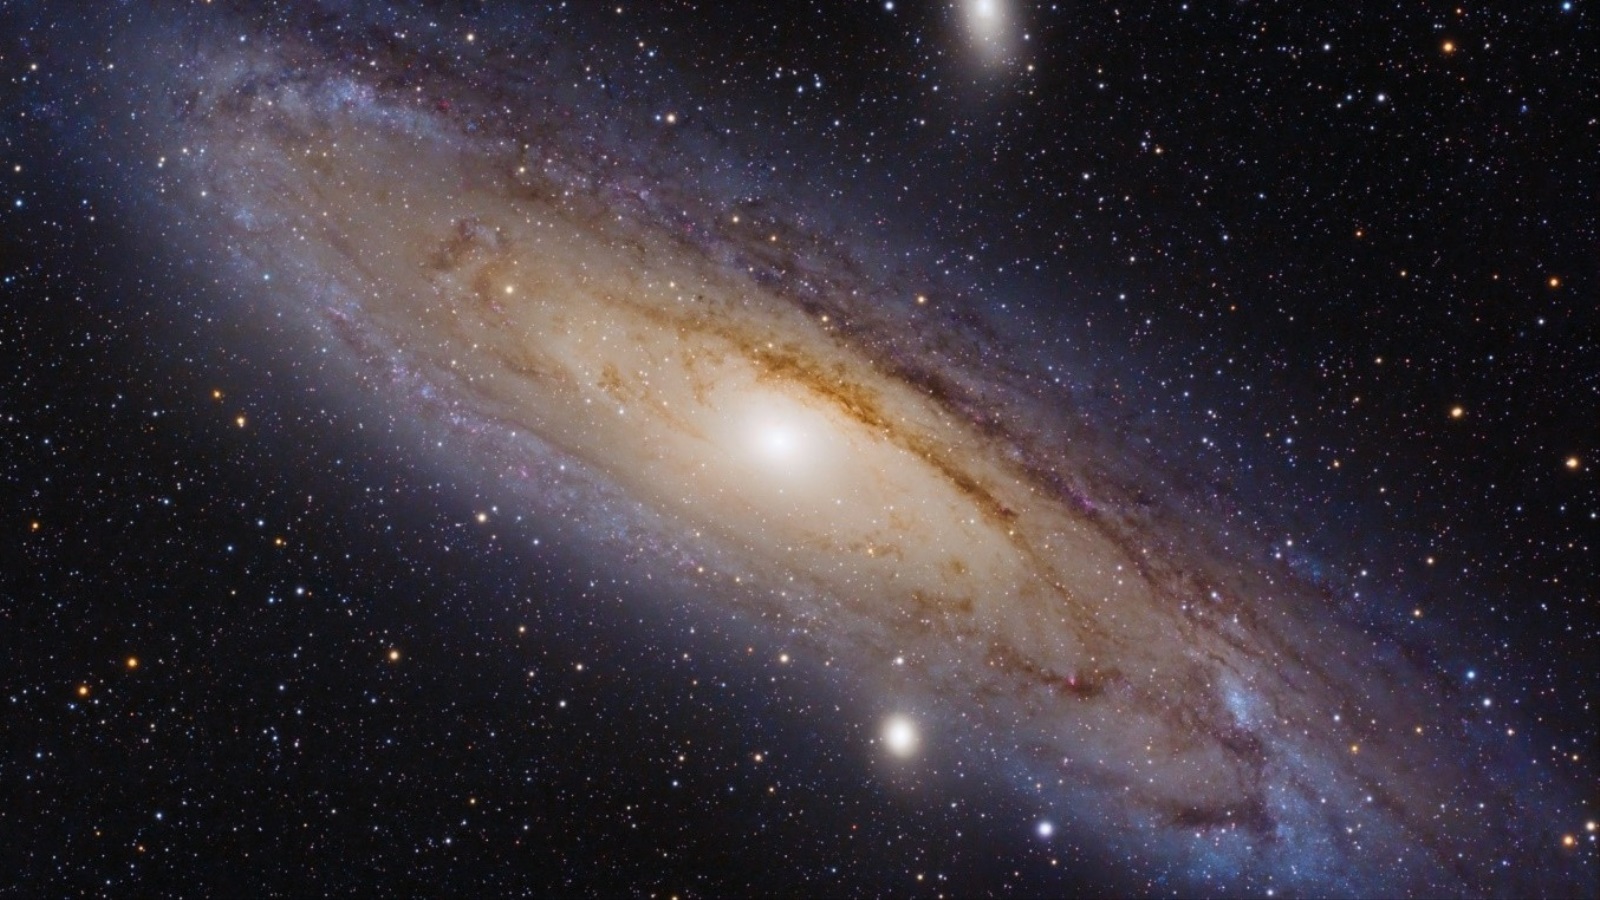 أندروميدا (المرأة المسلسلة) هي أقرب المجرّات لنا، تبتعد فقط 2.5 مليون سنة ضوئية، السنة الضوئية هي وحدة قياس مسافة وليس زمن، فهي المسافة التي يقطعها الضوء في سنة، وتساوي تقريبًا 9.5 تريليون كم (مواقع التواصل)